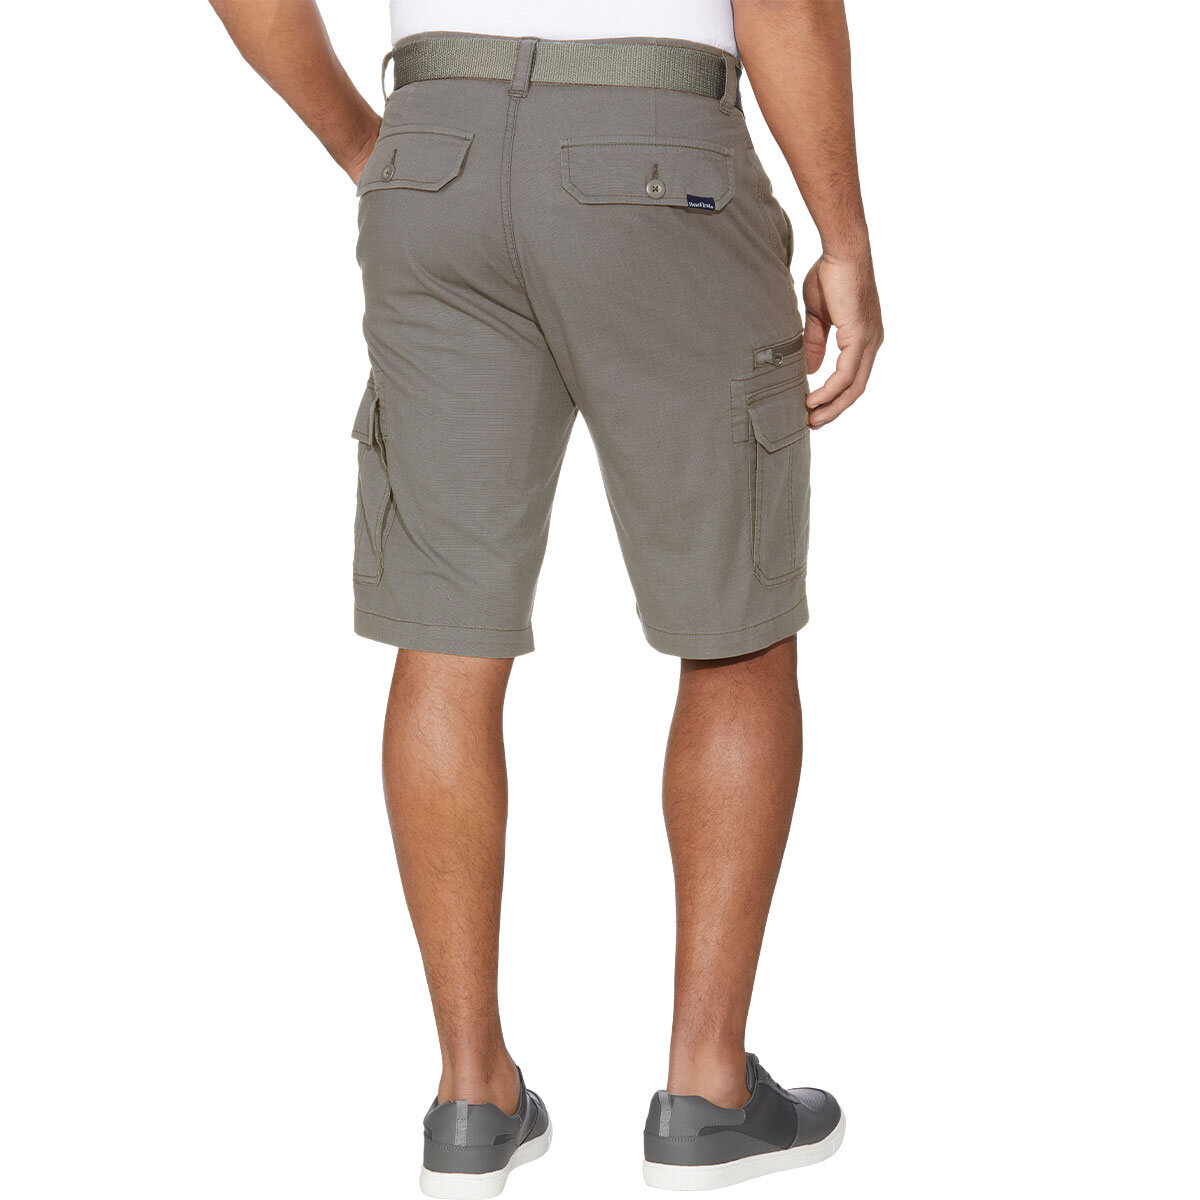 Back image of grey shorts